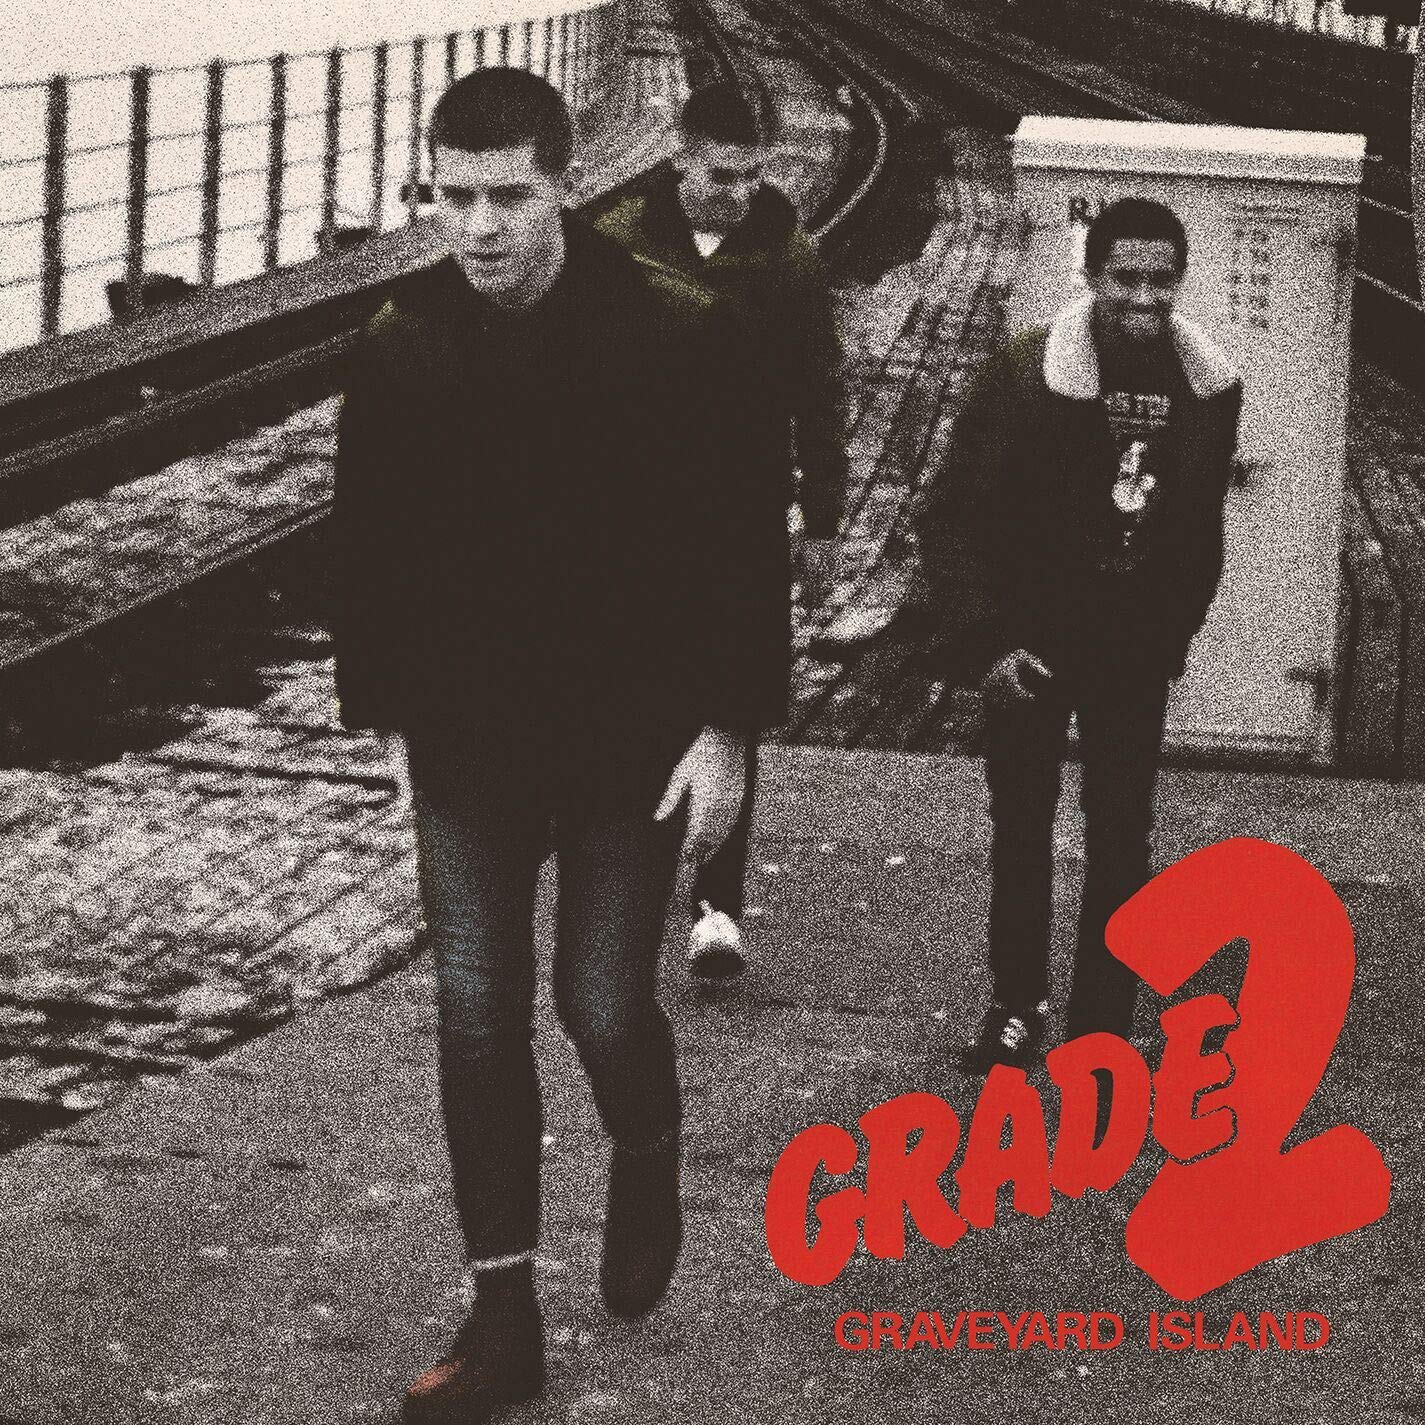 GRADE 2 - GRAVEYARD SHIFT Vinyl LP